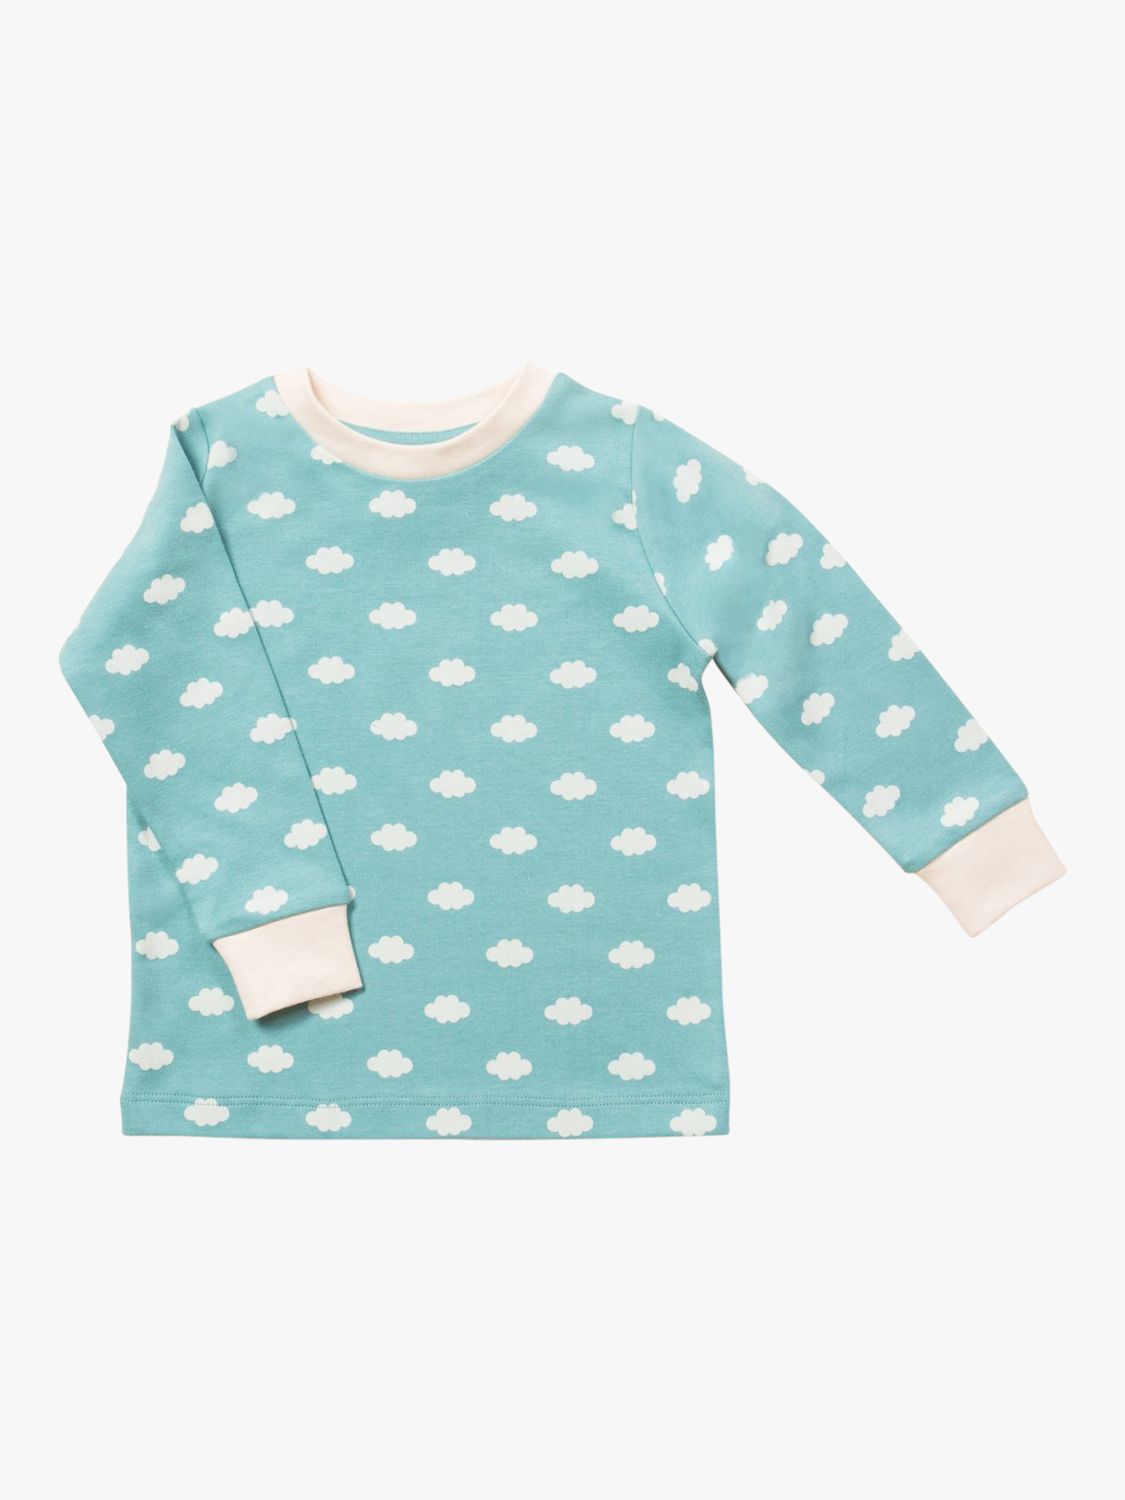 Little Green Radicals Kids' Fluffy Cloud Long Sleeve T-Shirt, Light Blue, 9-12 months